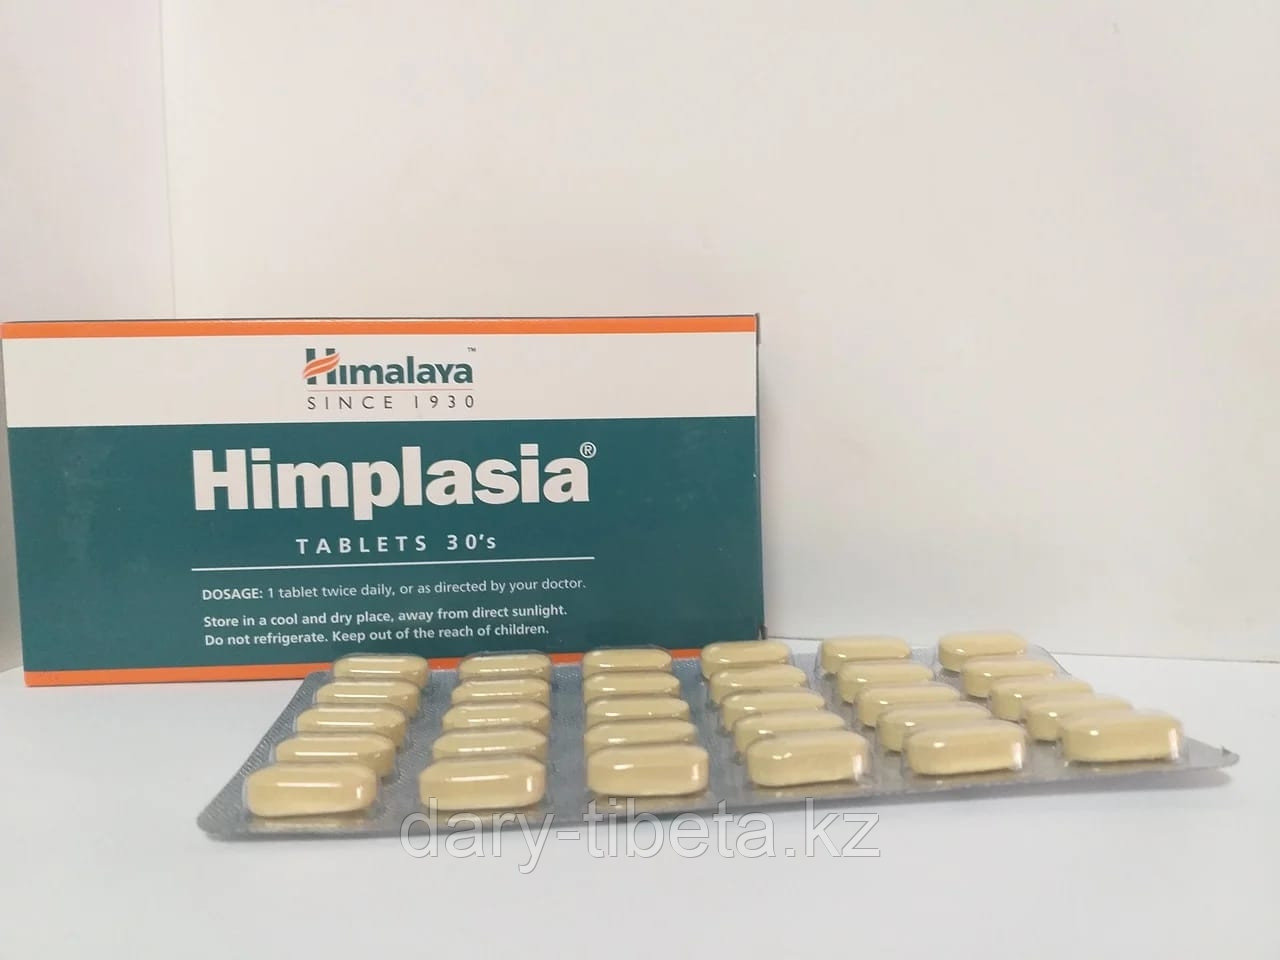 Химплазия(Himplasia) Himalaya,от простатита и других мужских заболеваний (30 табл)